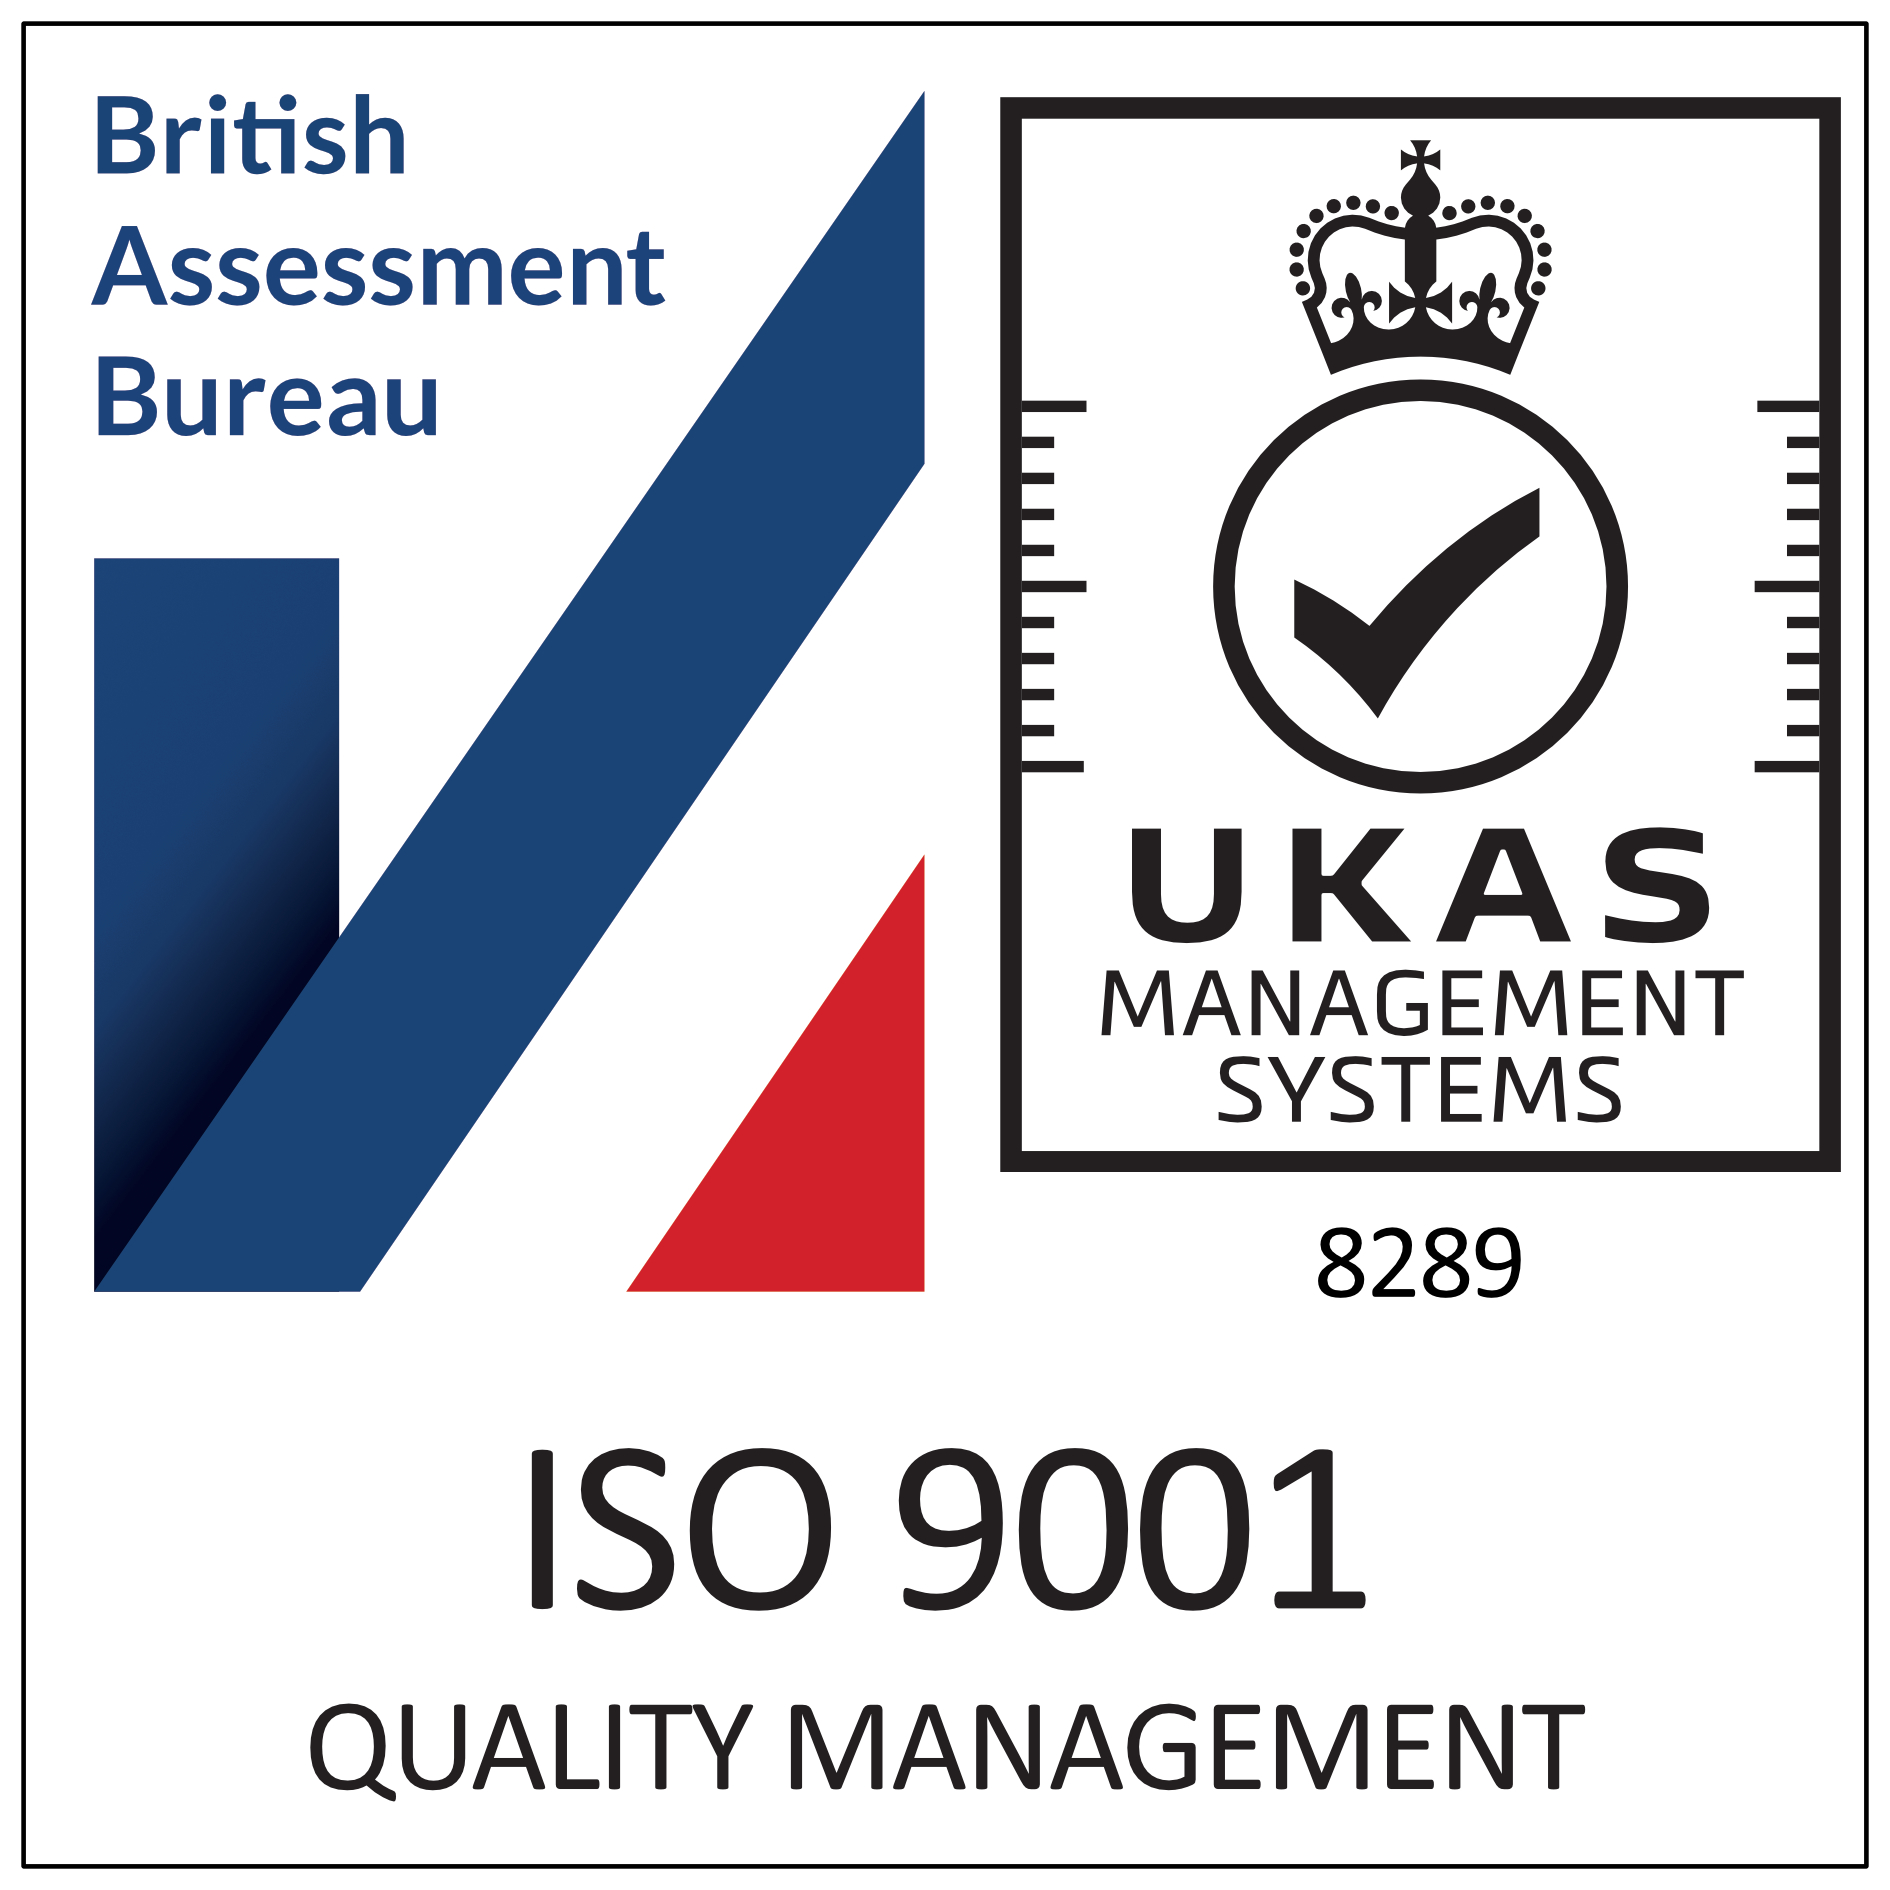 L'agenzia Plus Your Business di Cardiff, Wales, United Kingdom ha vinto il riconoscimento ISO 9001 certified